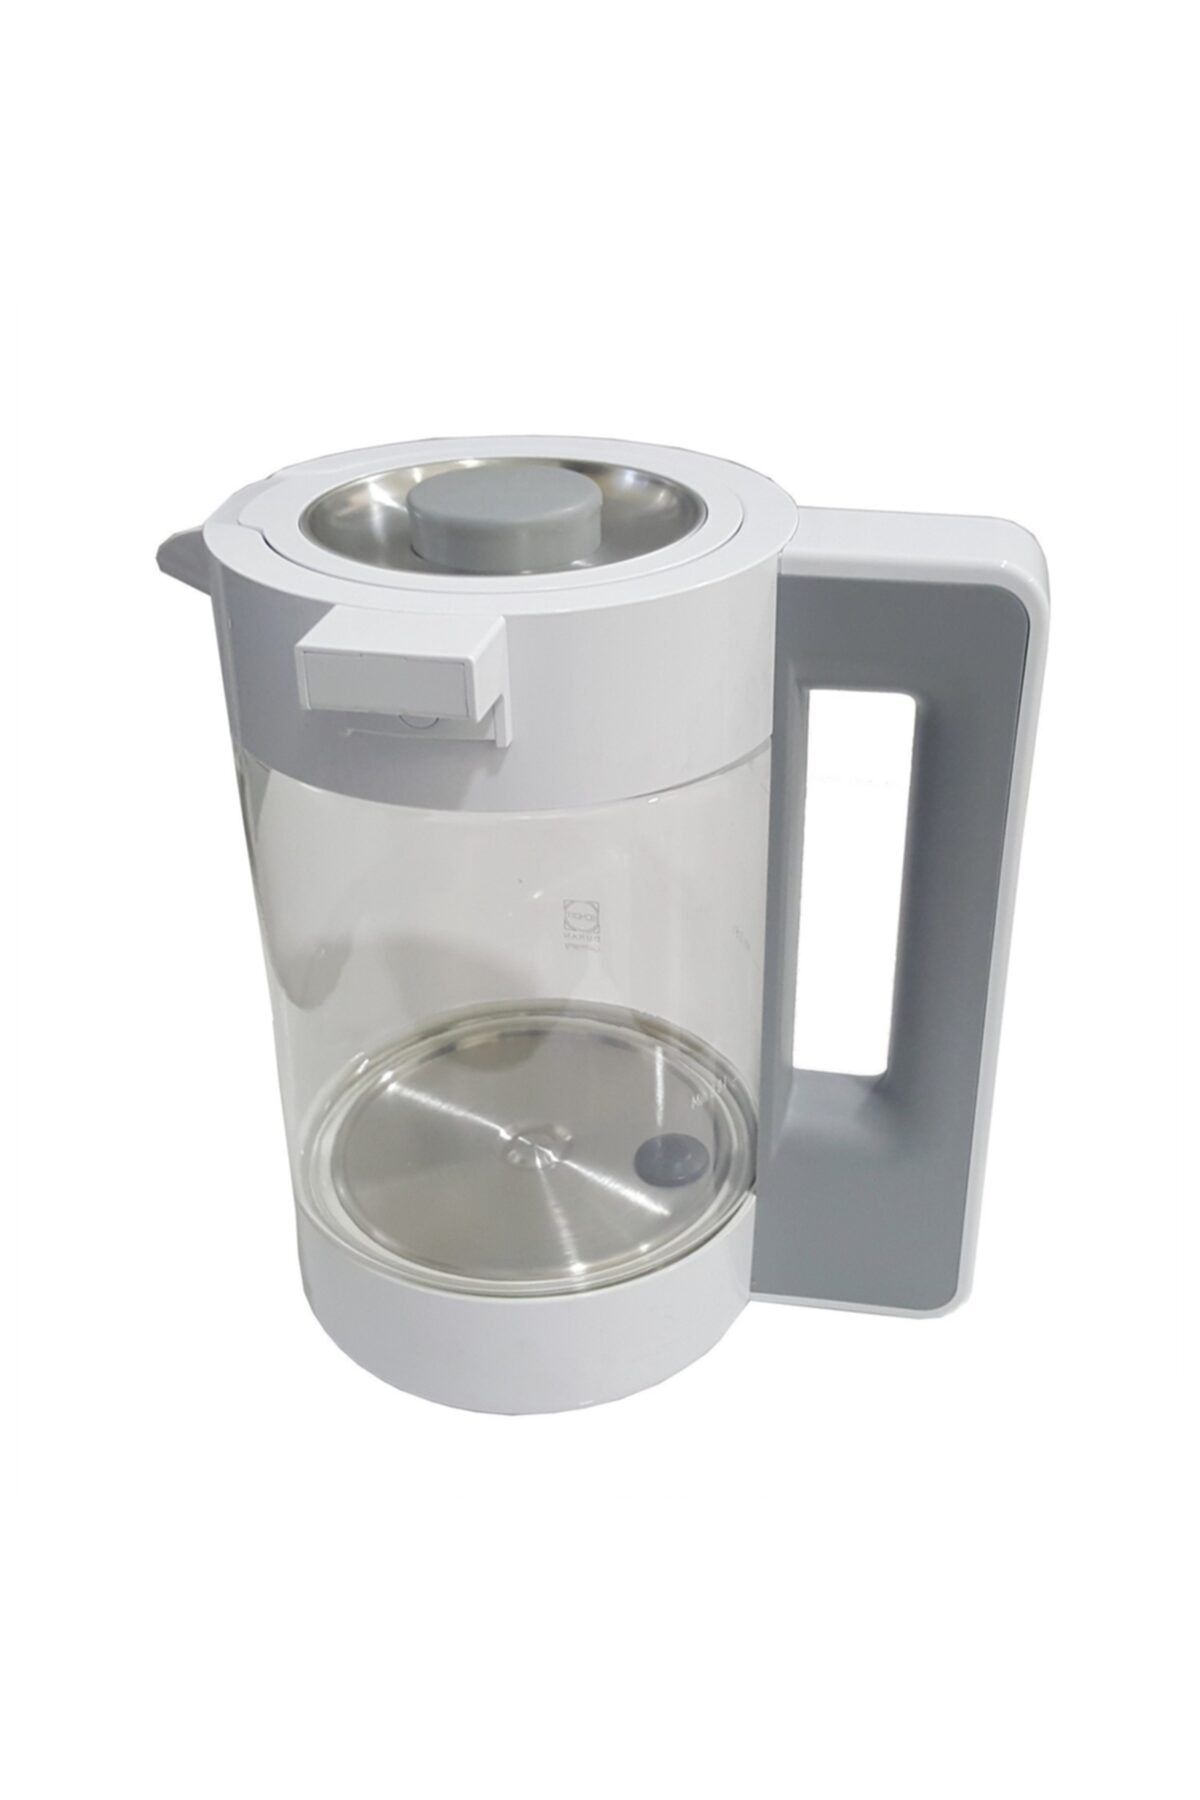 Arçelik 3284 Gurme Çay Makinesi Kettle Su Isıtıcı Sürahi